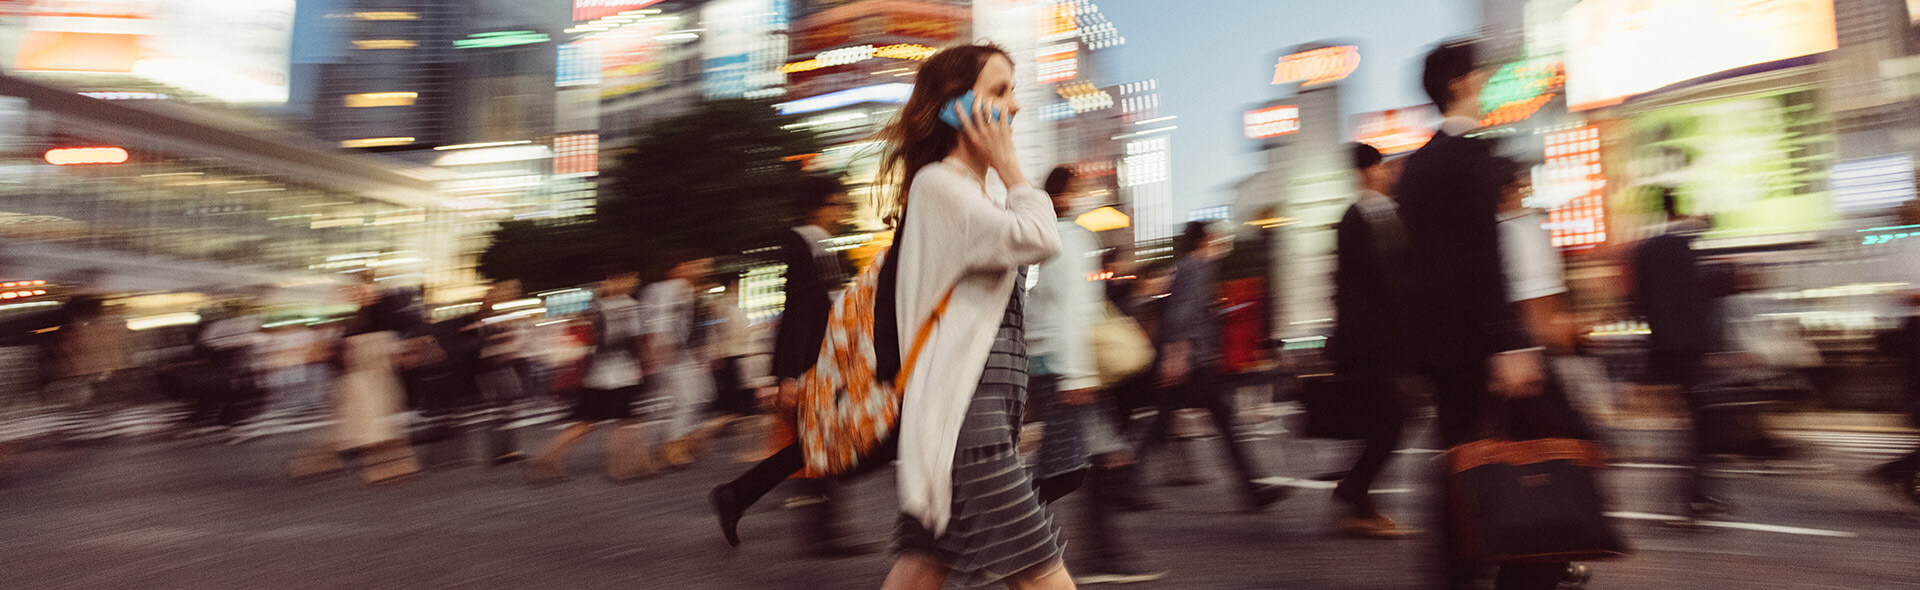 Une femme au téléphone traverse la rue d'une grande ville avec beaucoup d'autres personnes